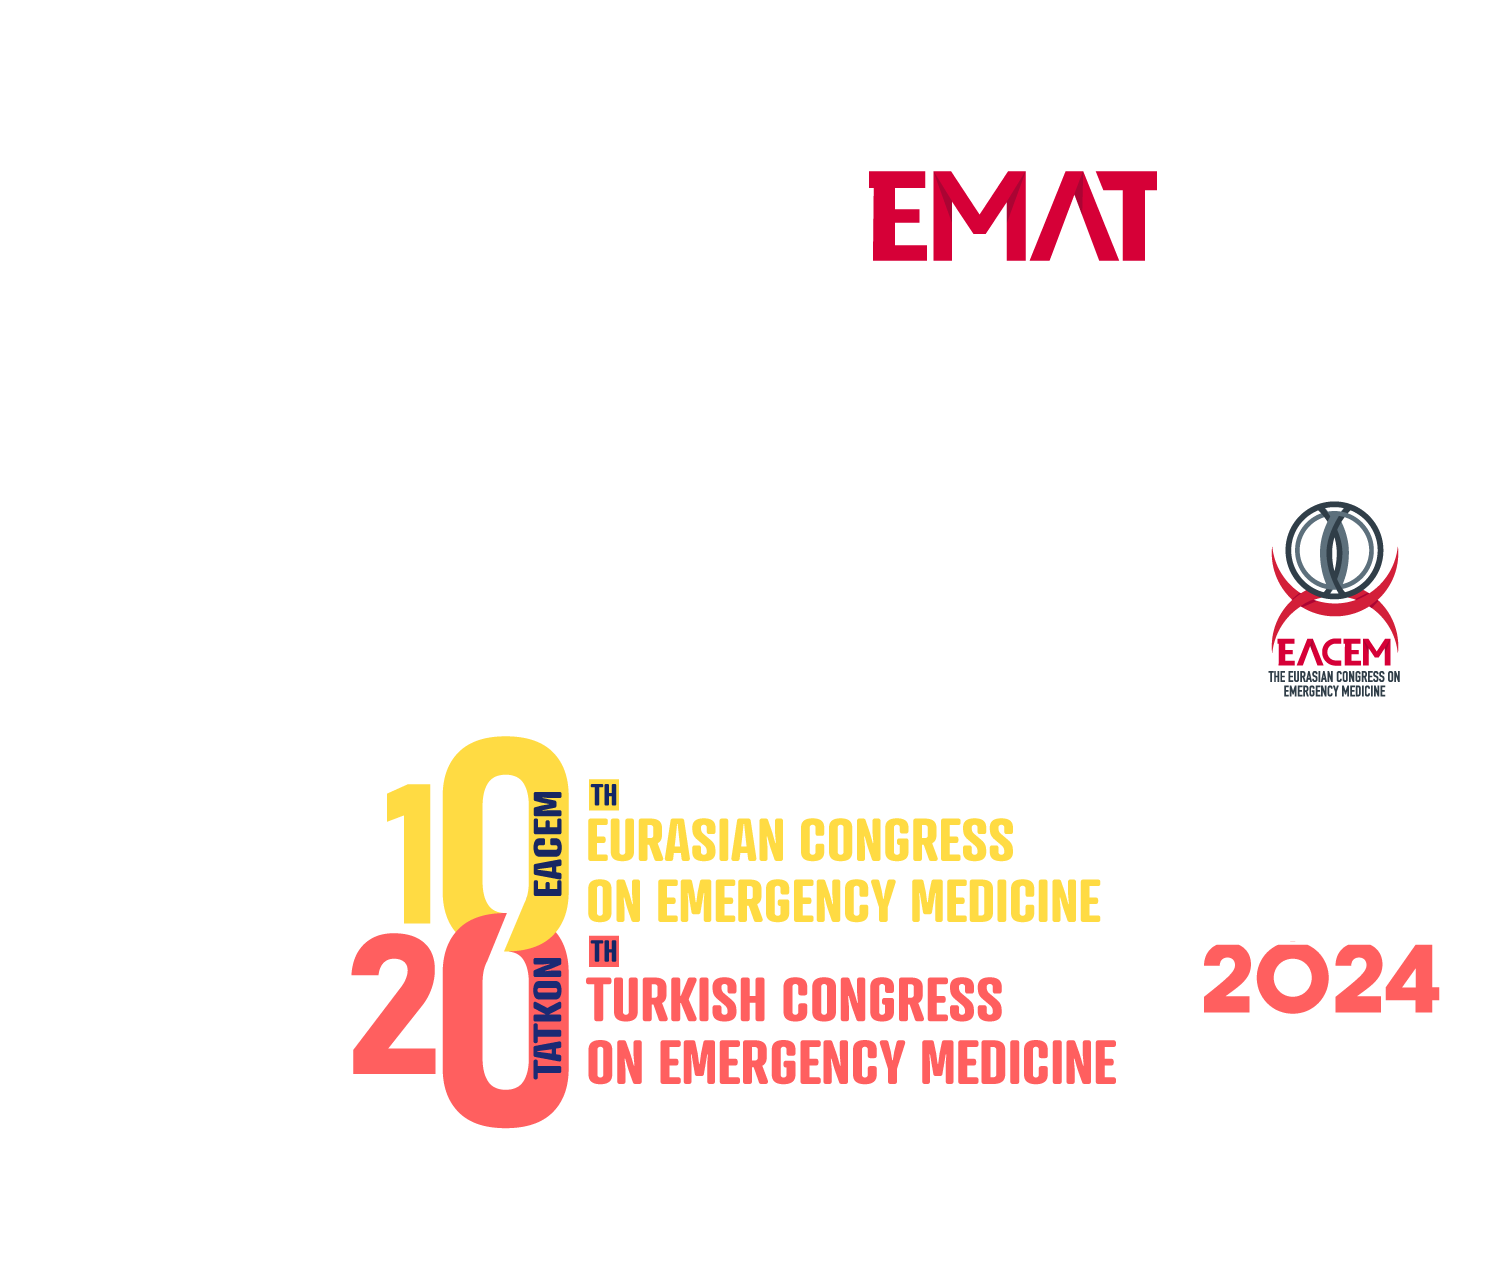 EACEM / TATKON – Avrasya Acil Tıp Kongresi 2024 / Türkiye Acil Tıp Kongresi 2024